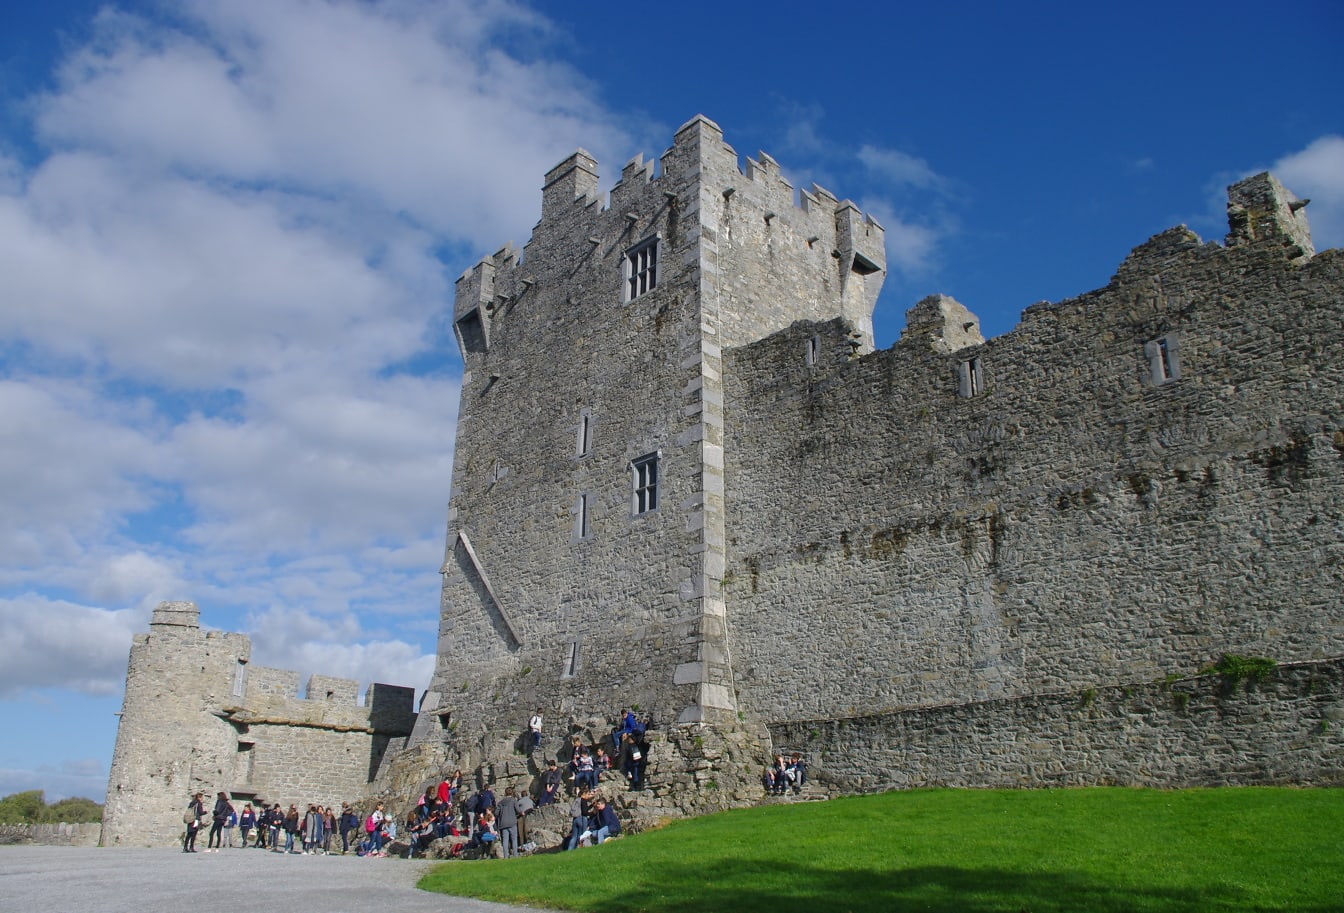 Ross kastély erődítmény falai és torony turisztikai attrakció